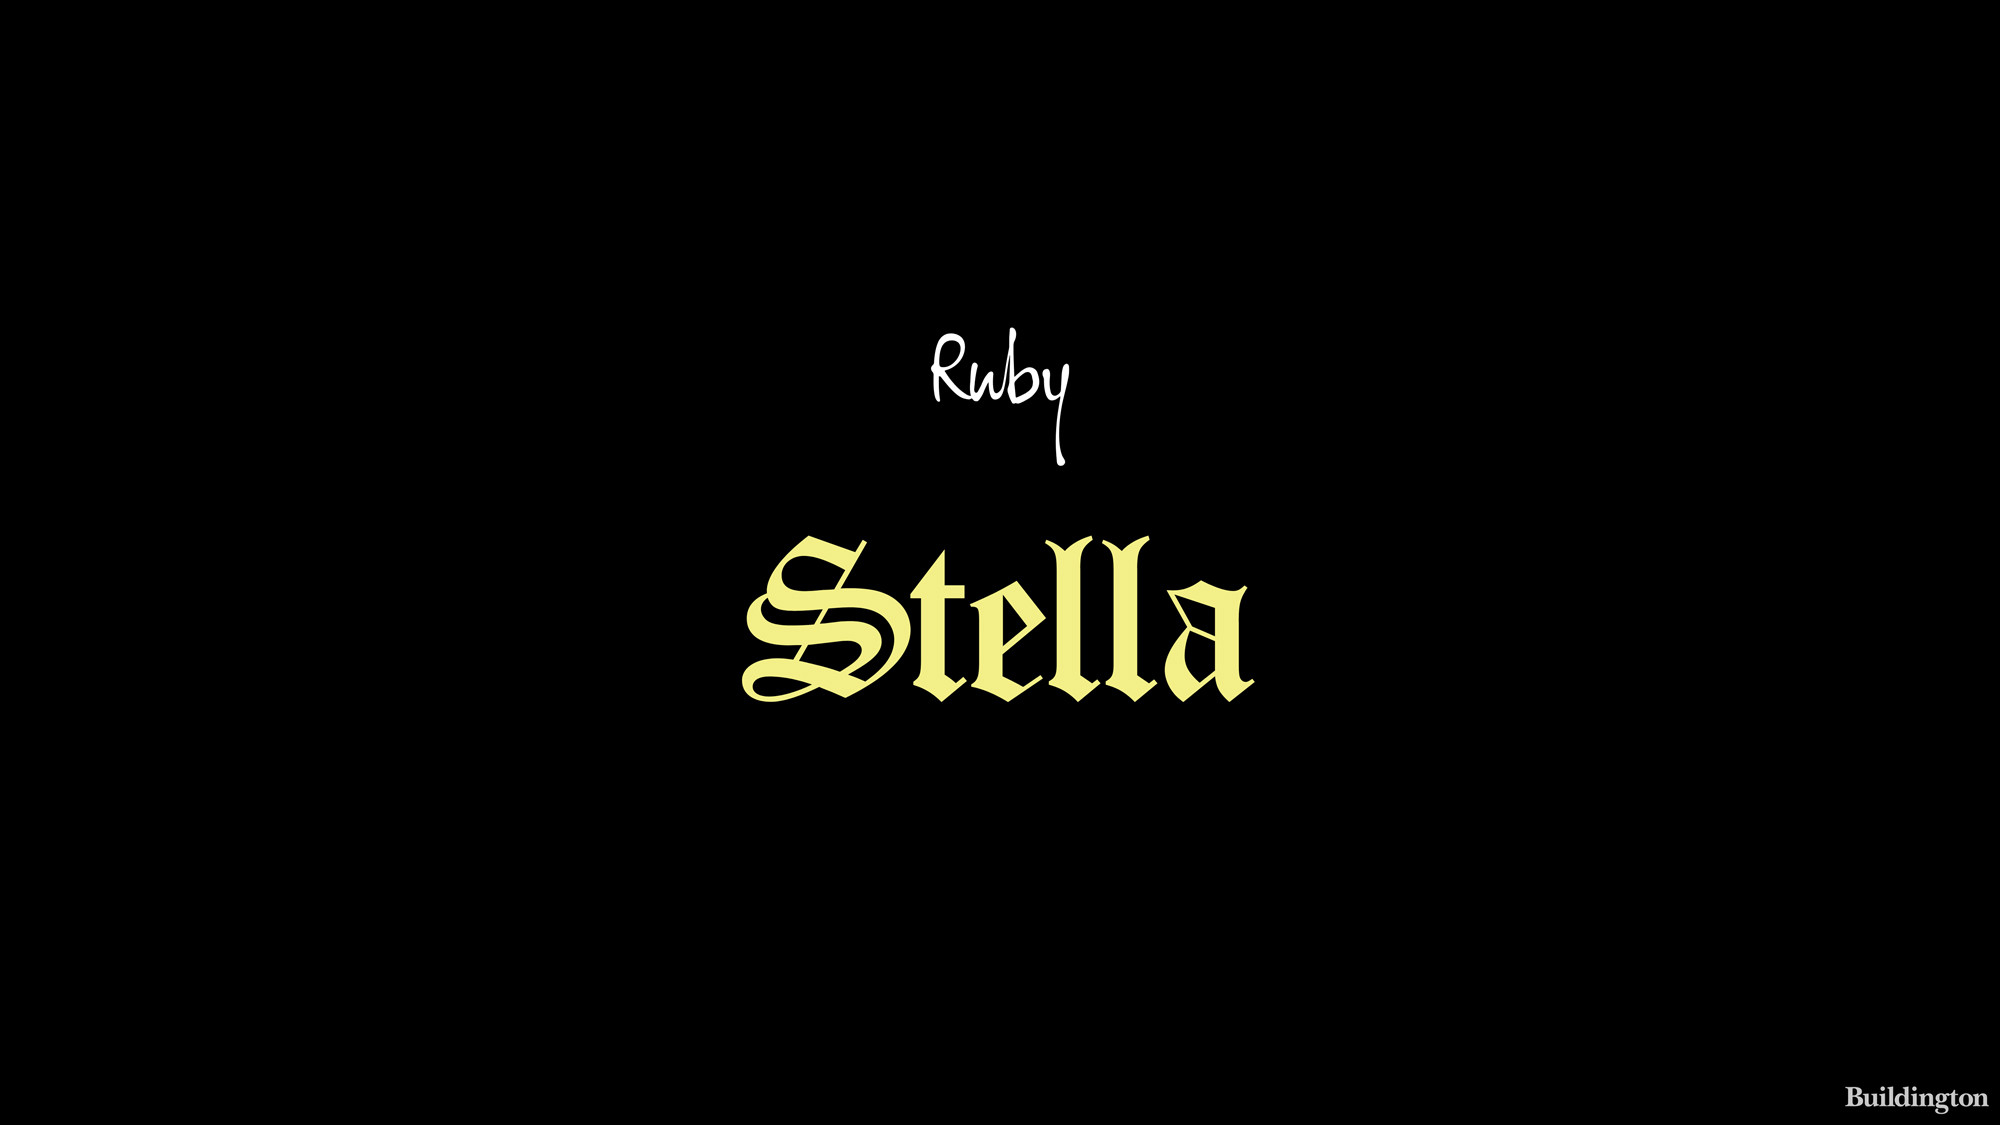 Ruby Stella Hotel and Bar logo